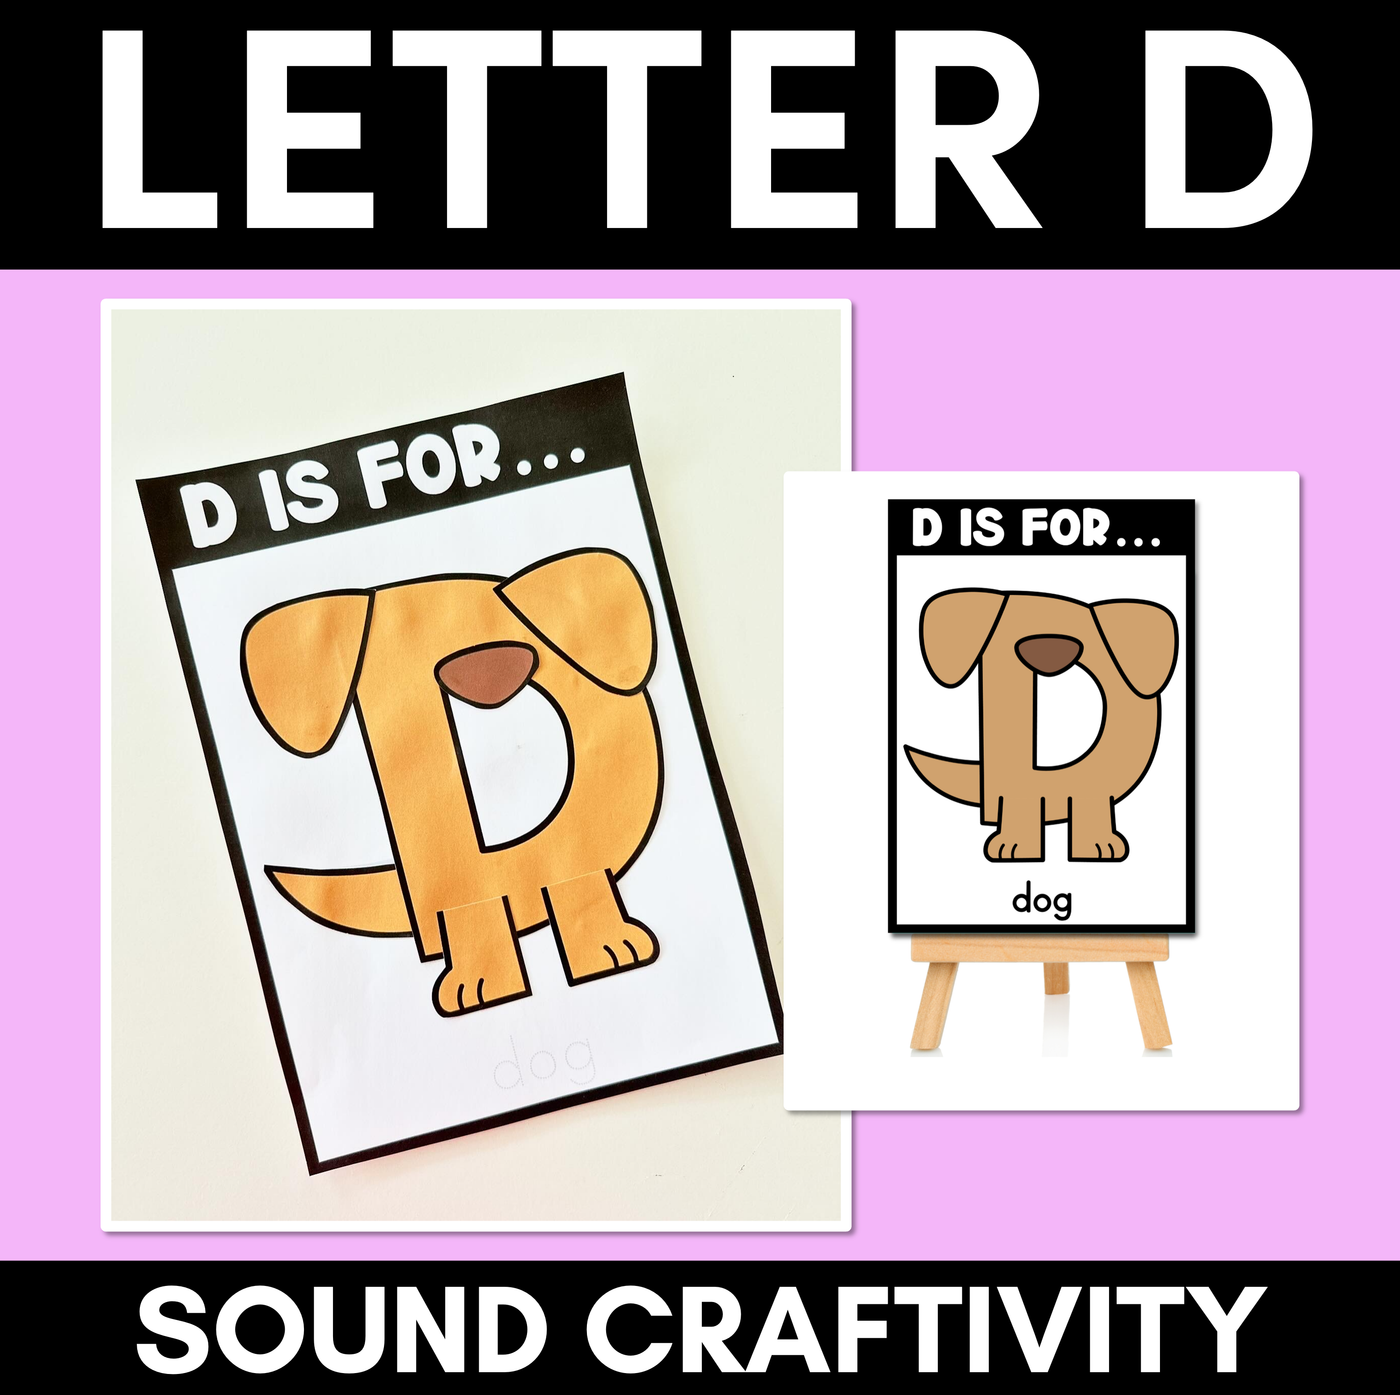 Beginning Sound Crafts - Letter D - D is for Dog